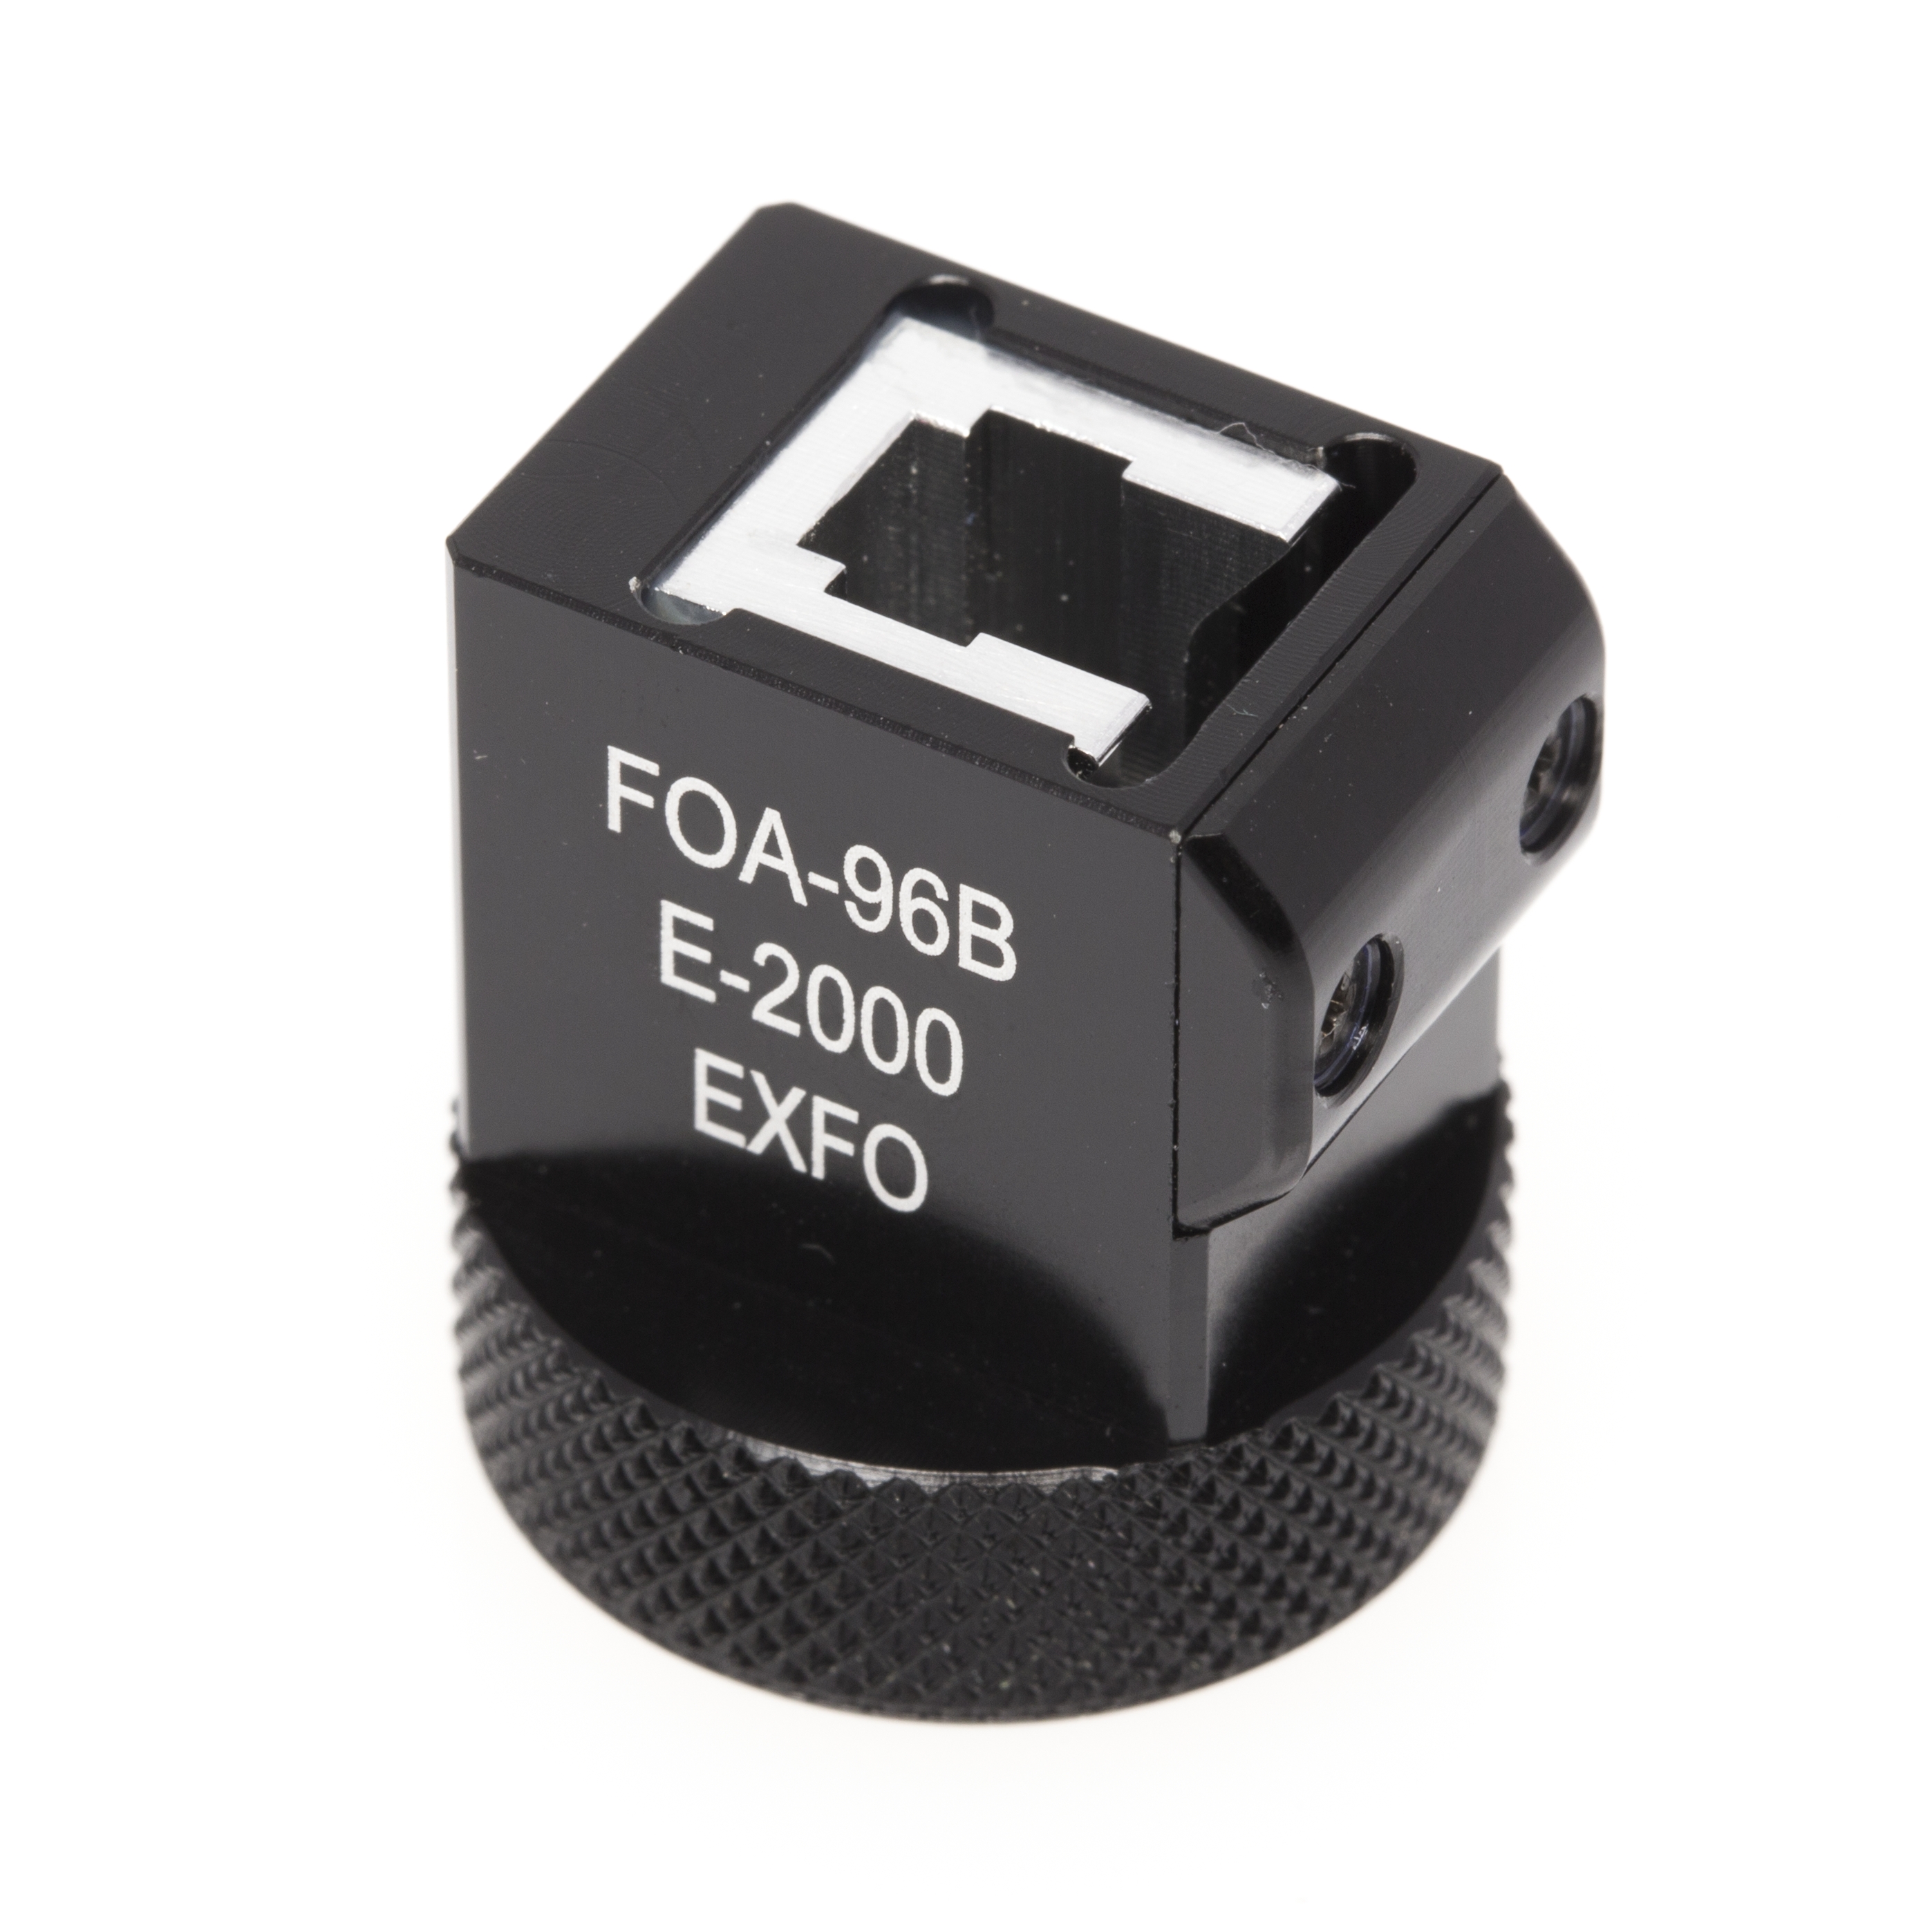 EXFO FOA-96B : Сменный адаптер E-2000 для портативных и встроенных в платформы измерителей мощности